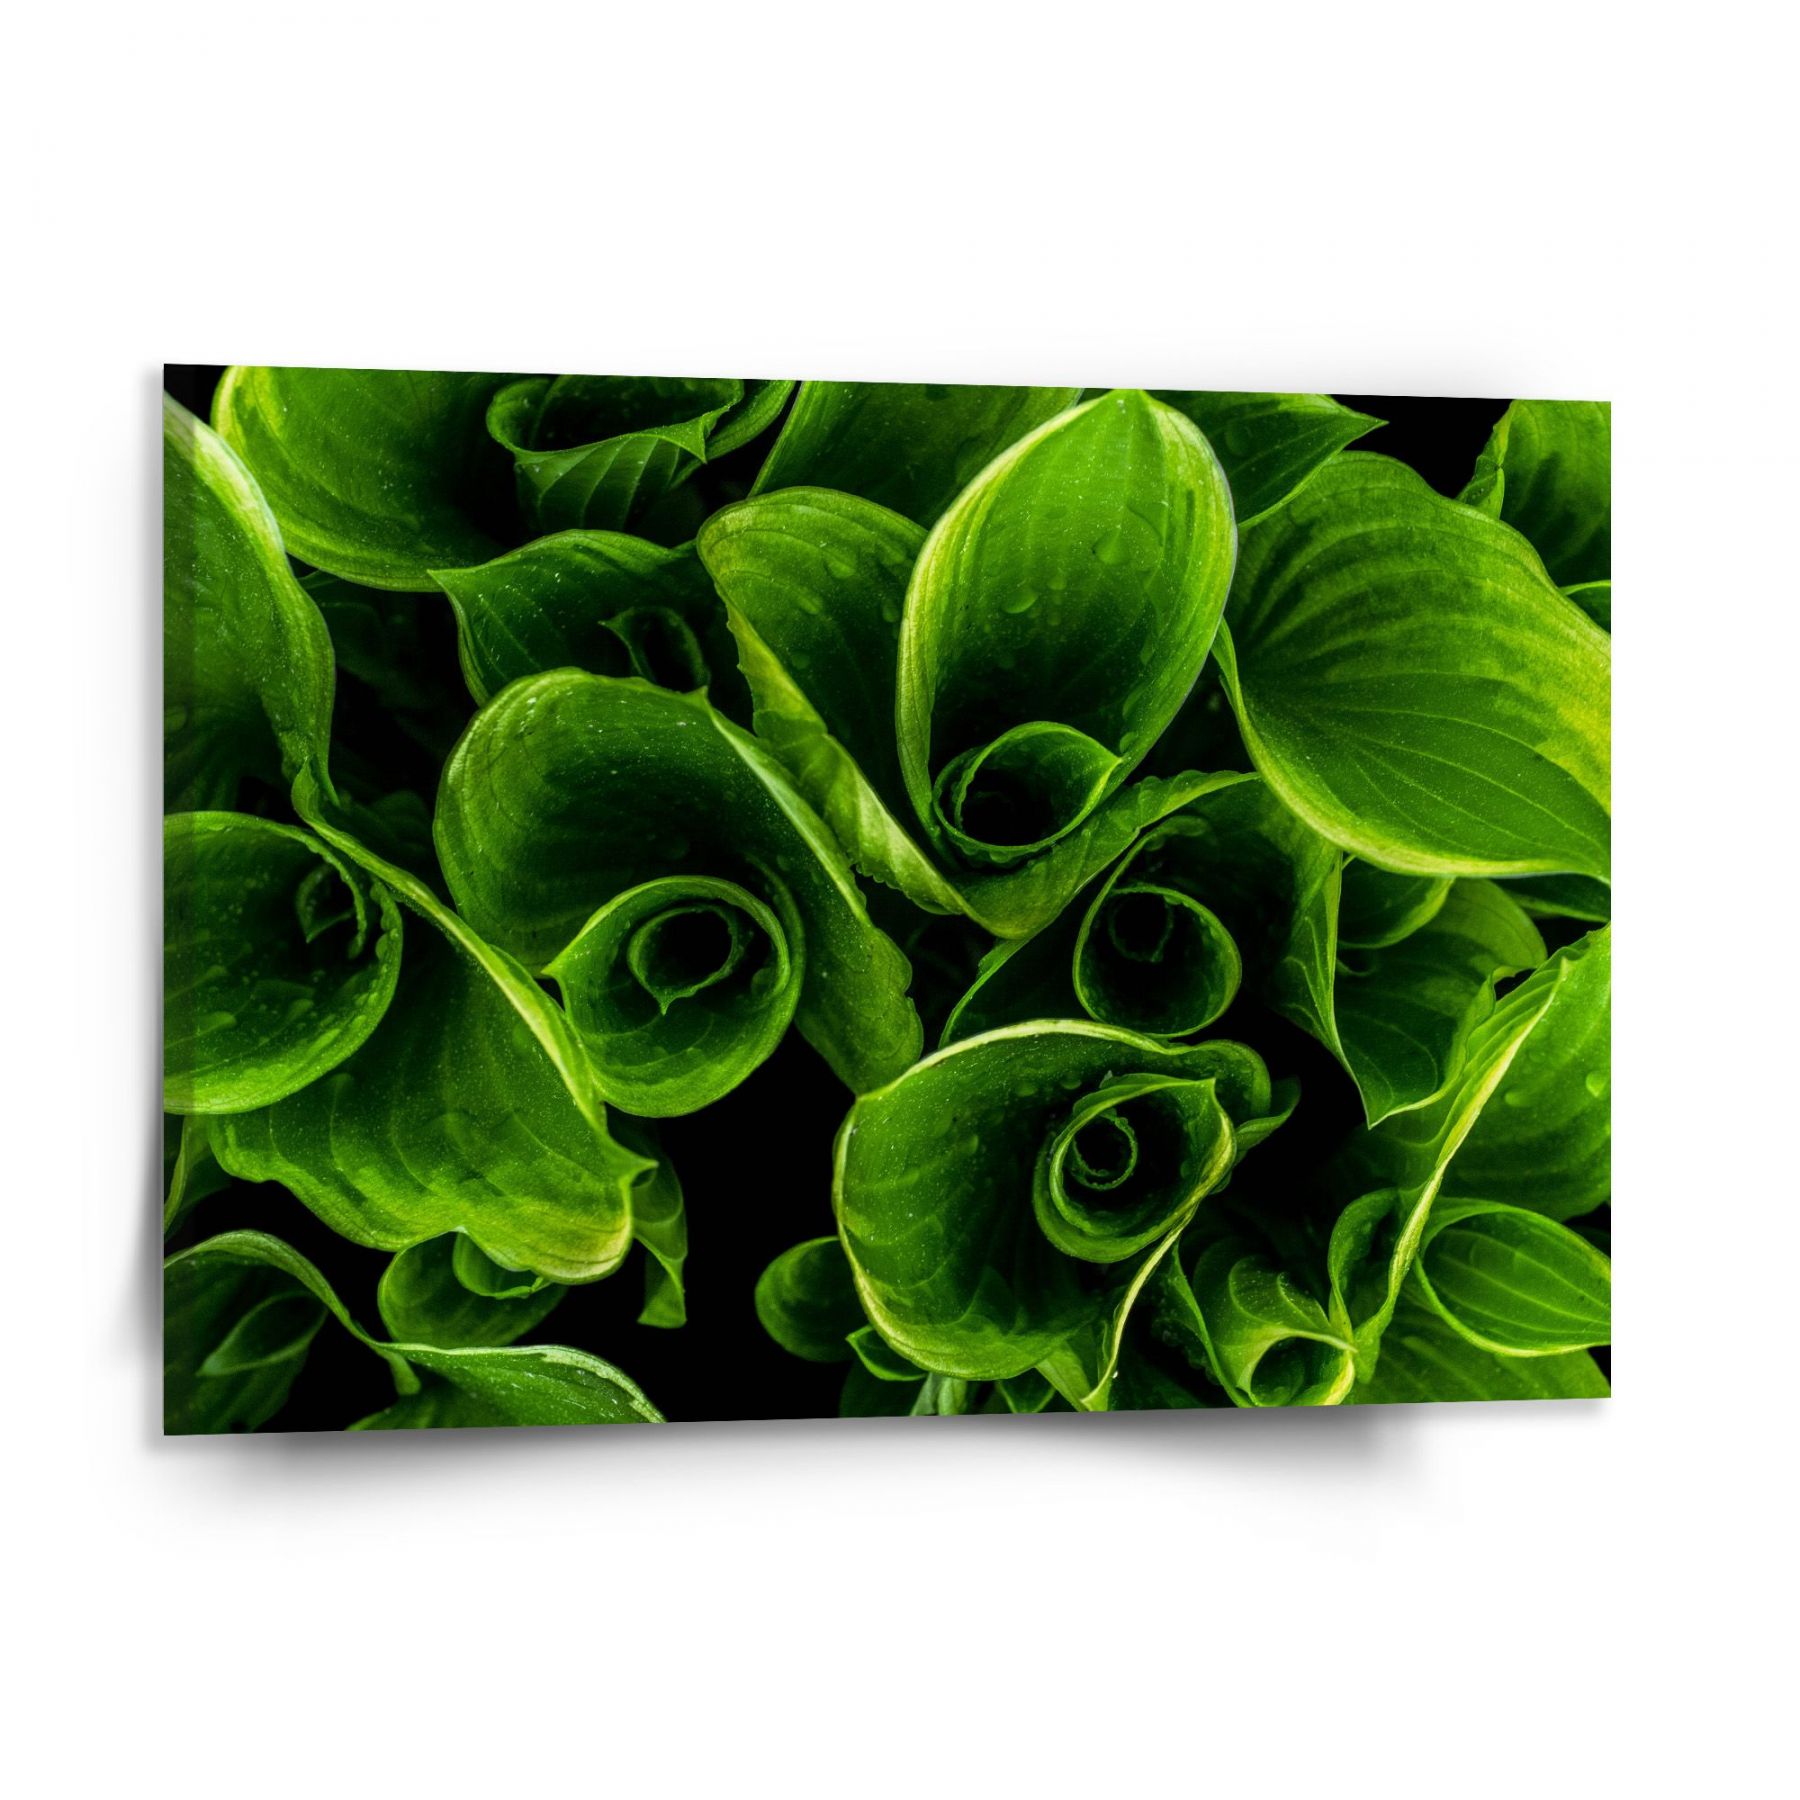 Obraz SABLIO - Zelené listy 150x110 cm - E-shop Sablo s.r.o.